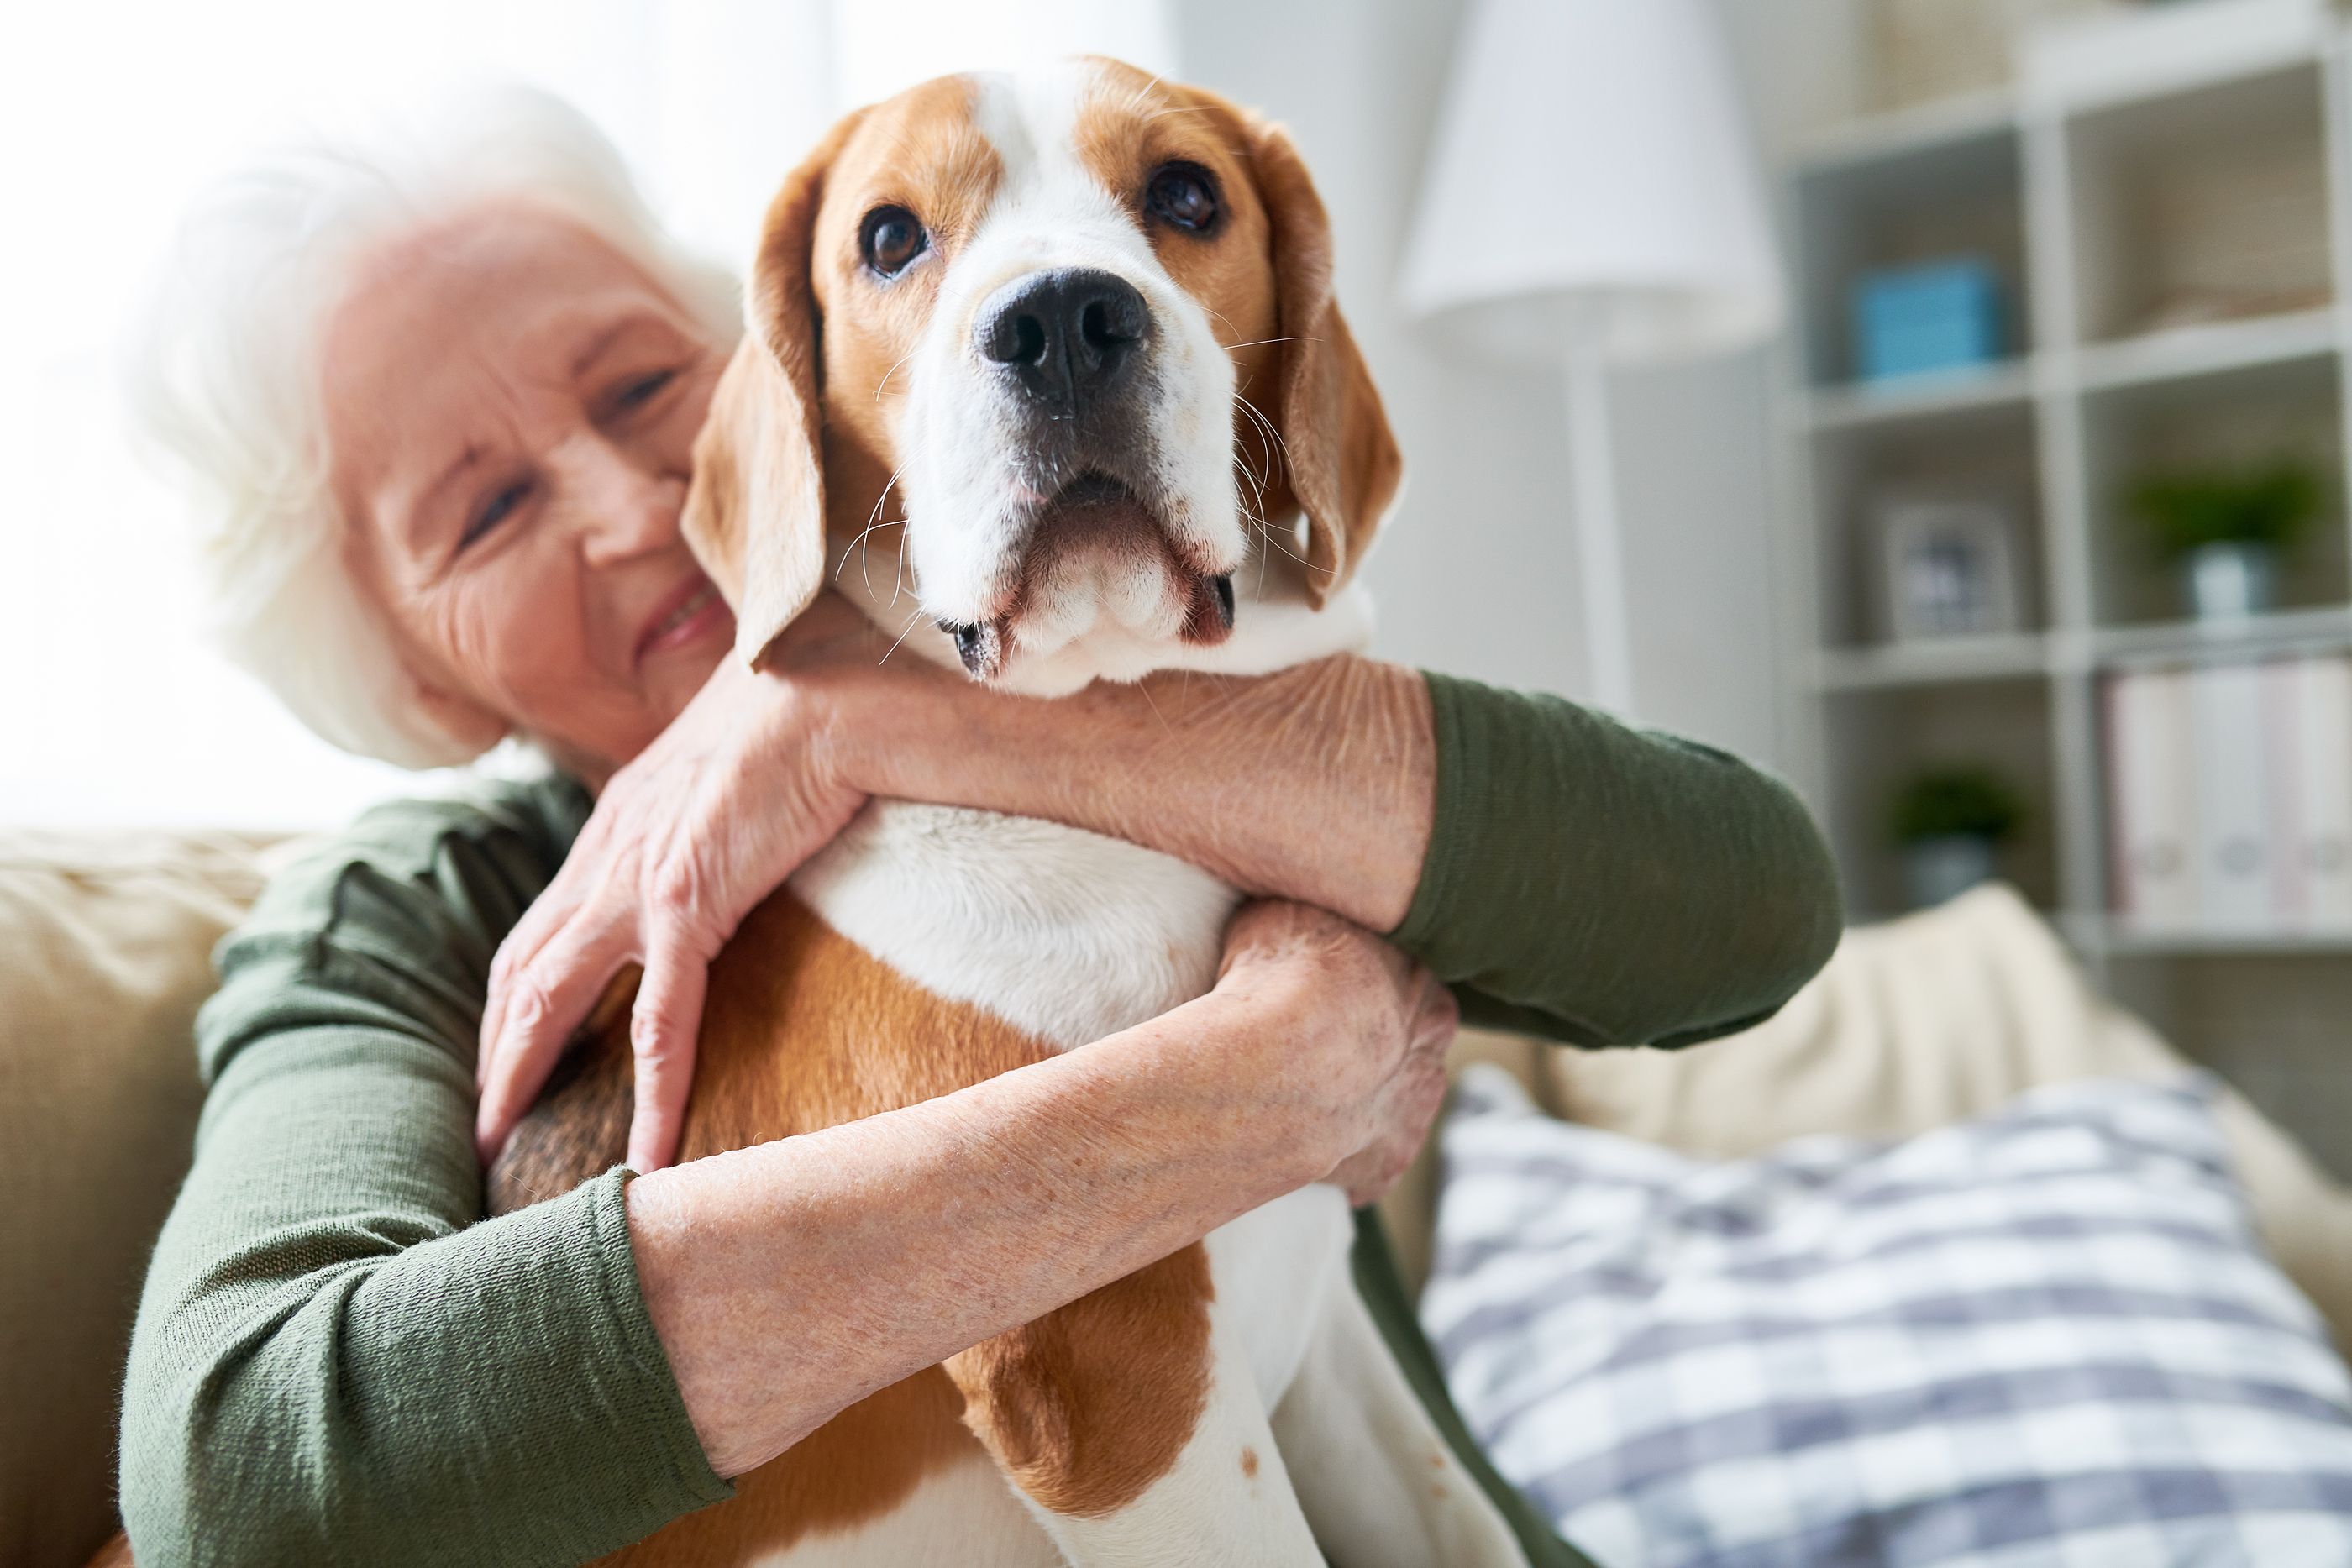 Tener una mascota podría desacelerar el deterioro cognitivo en personas mayores que viven solas. Foto: Bigstock